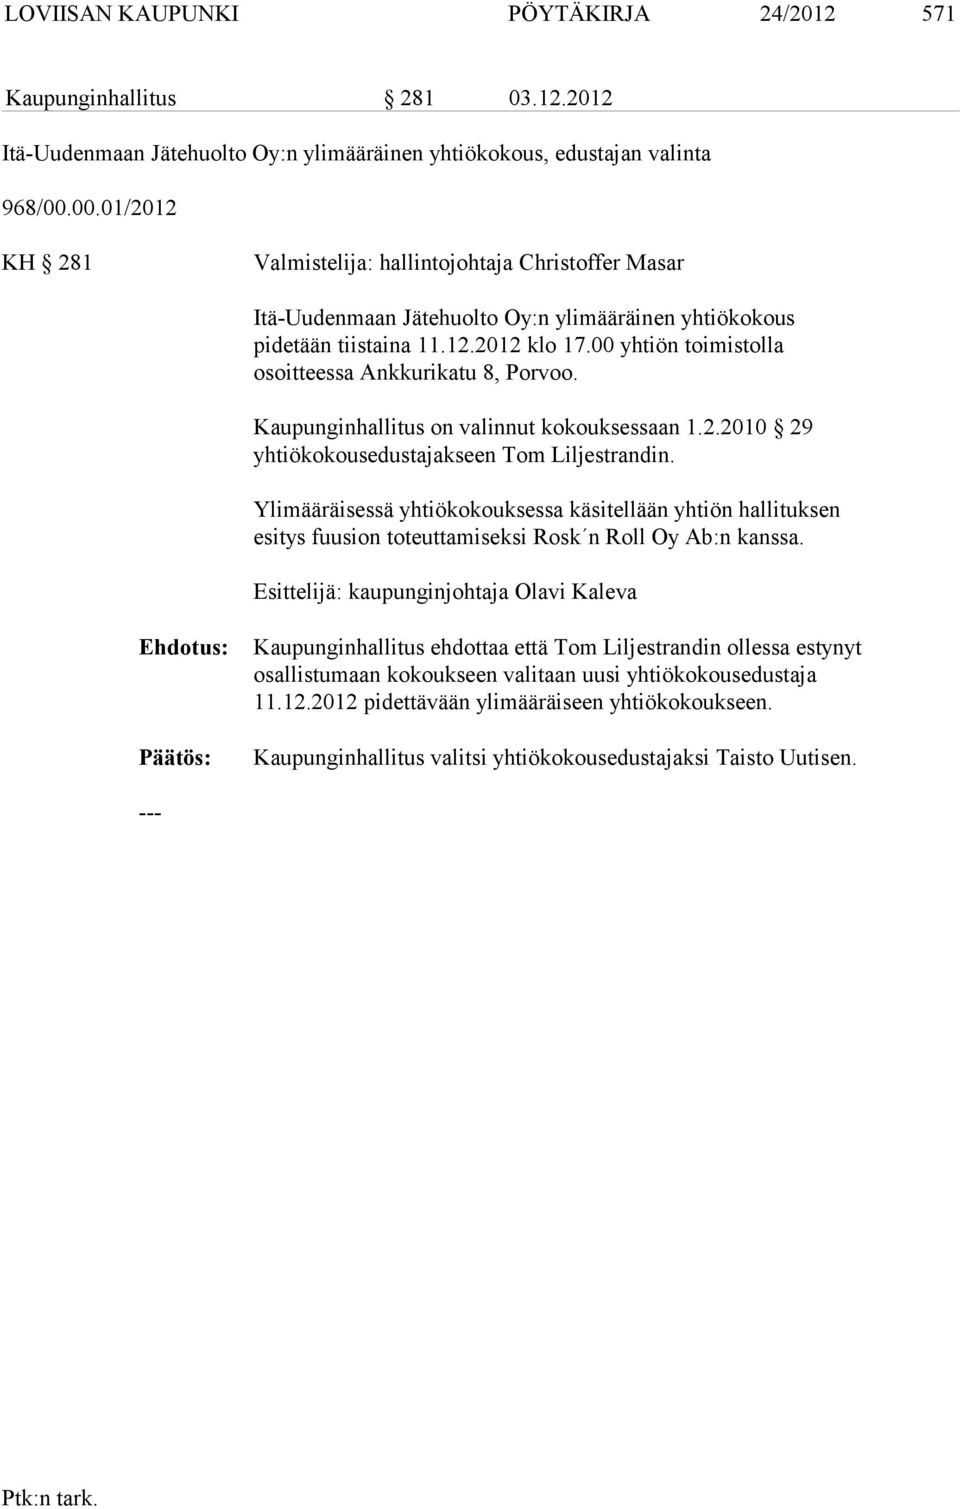 00 yhtiön toimistolla osoitteessa Ankkurikatu 8, Porvoo. Kaupunginhallitus on valinnut kokouksessaan 1.2.2010 29 yhtiökokousedustajakseen Tom Liljestrandin.